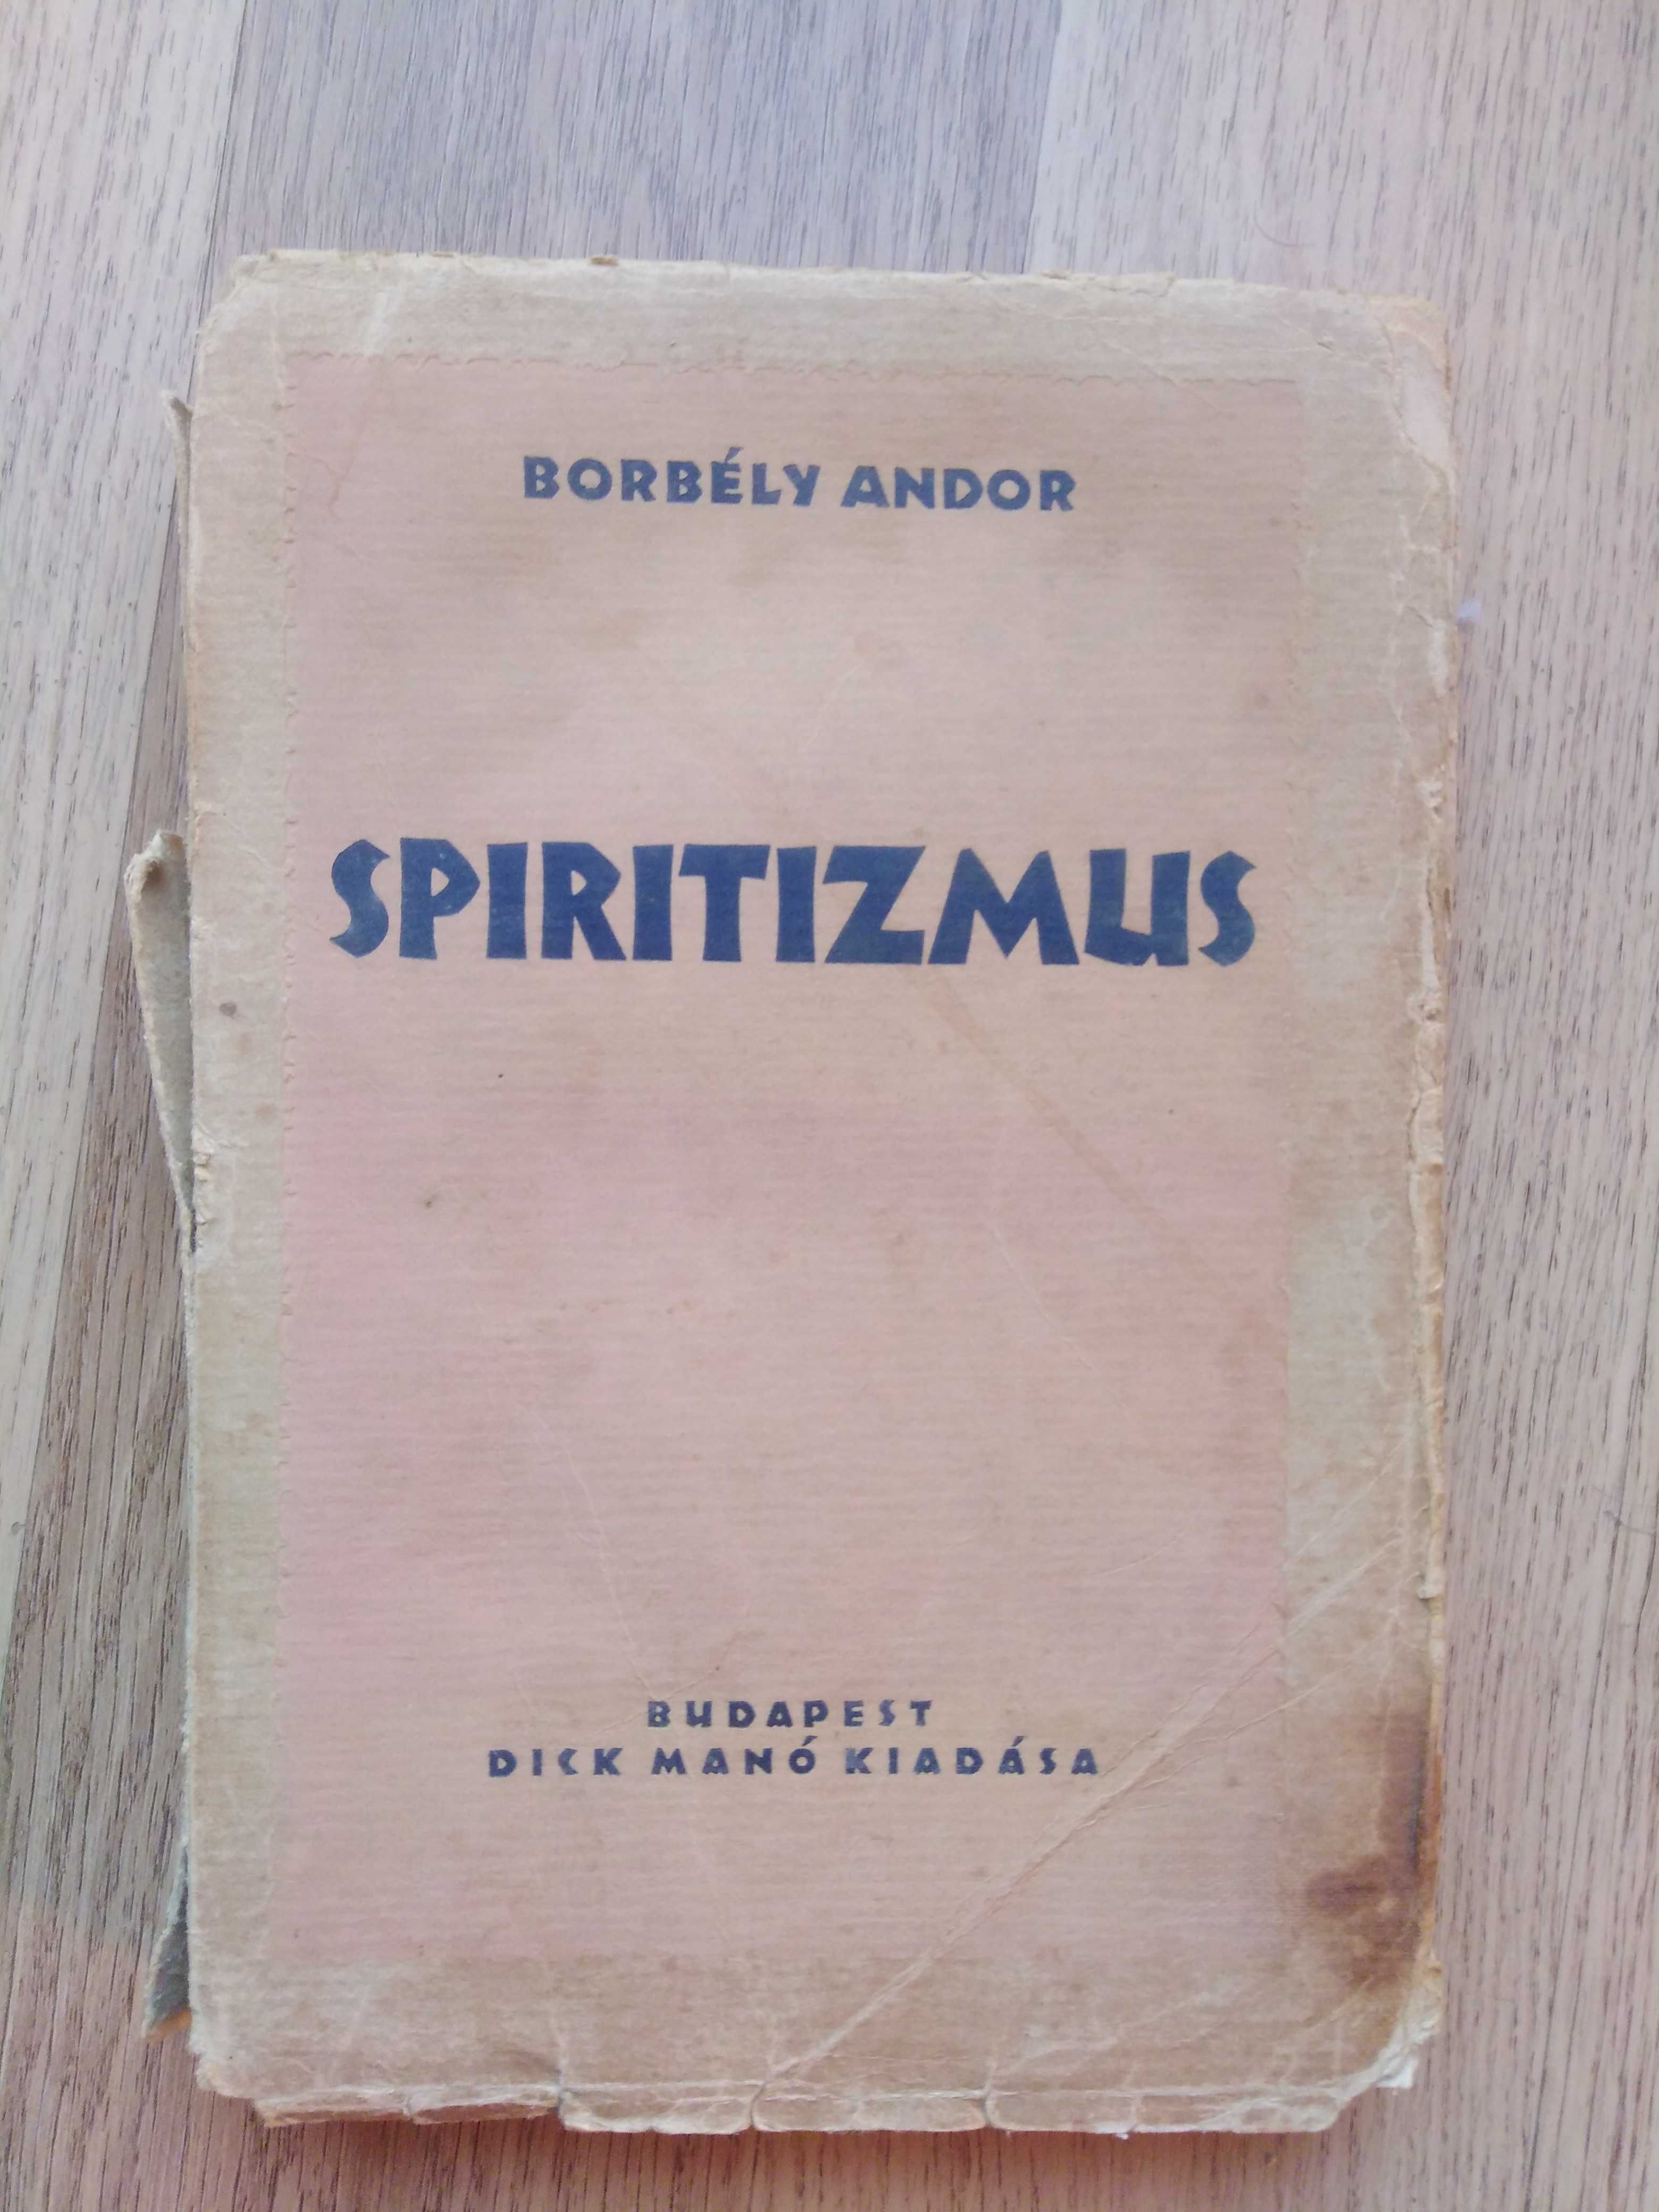 Borbely Andor - Spiritizmus (publicată în 1926)